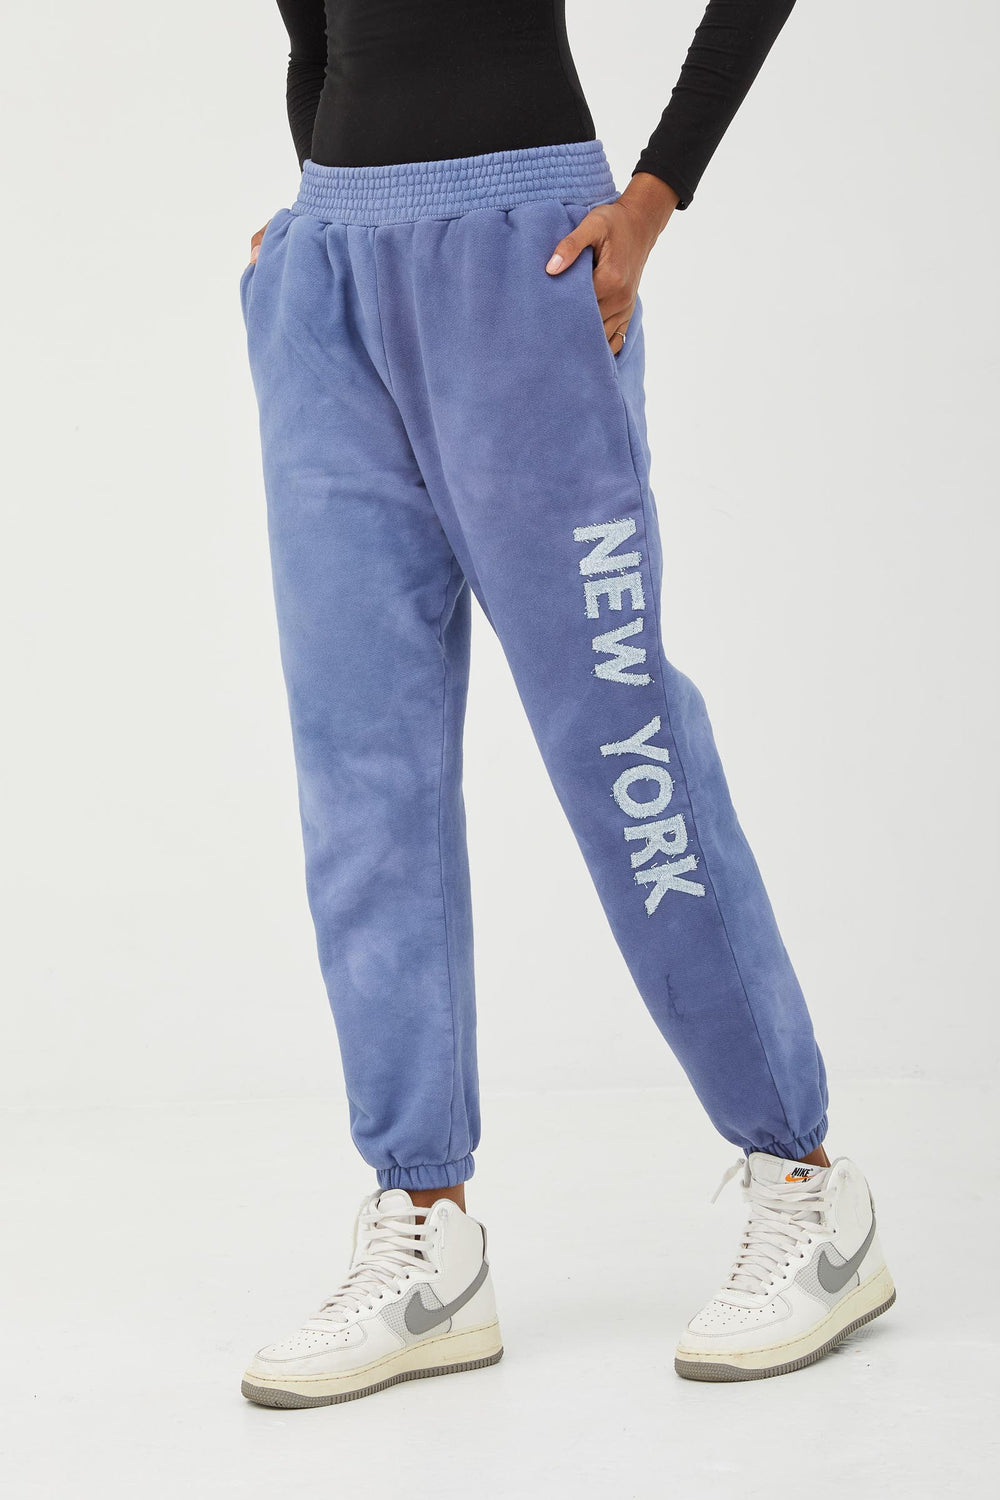 Custom Letter Blue Sweatpants